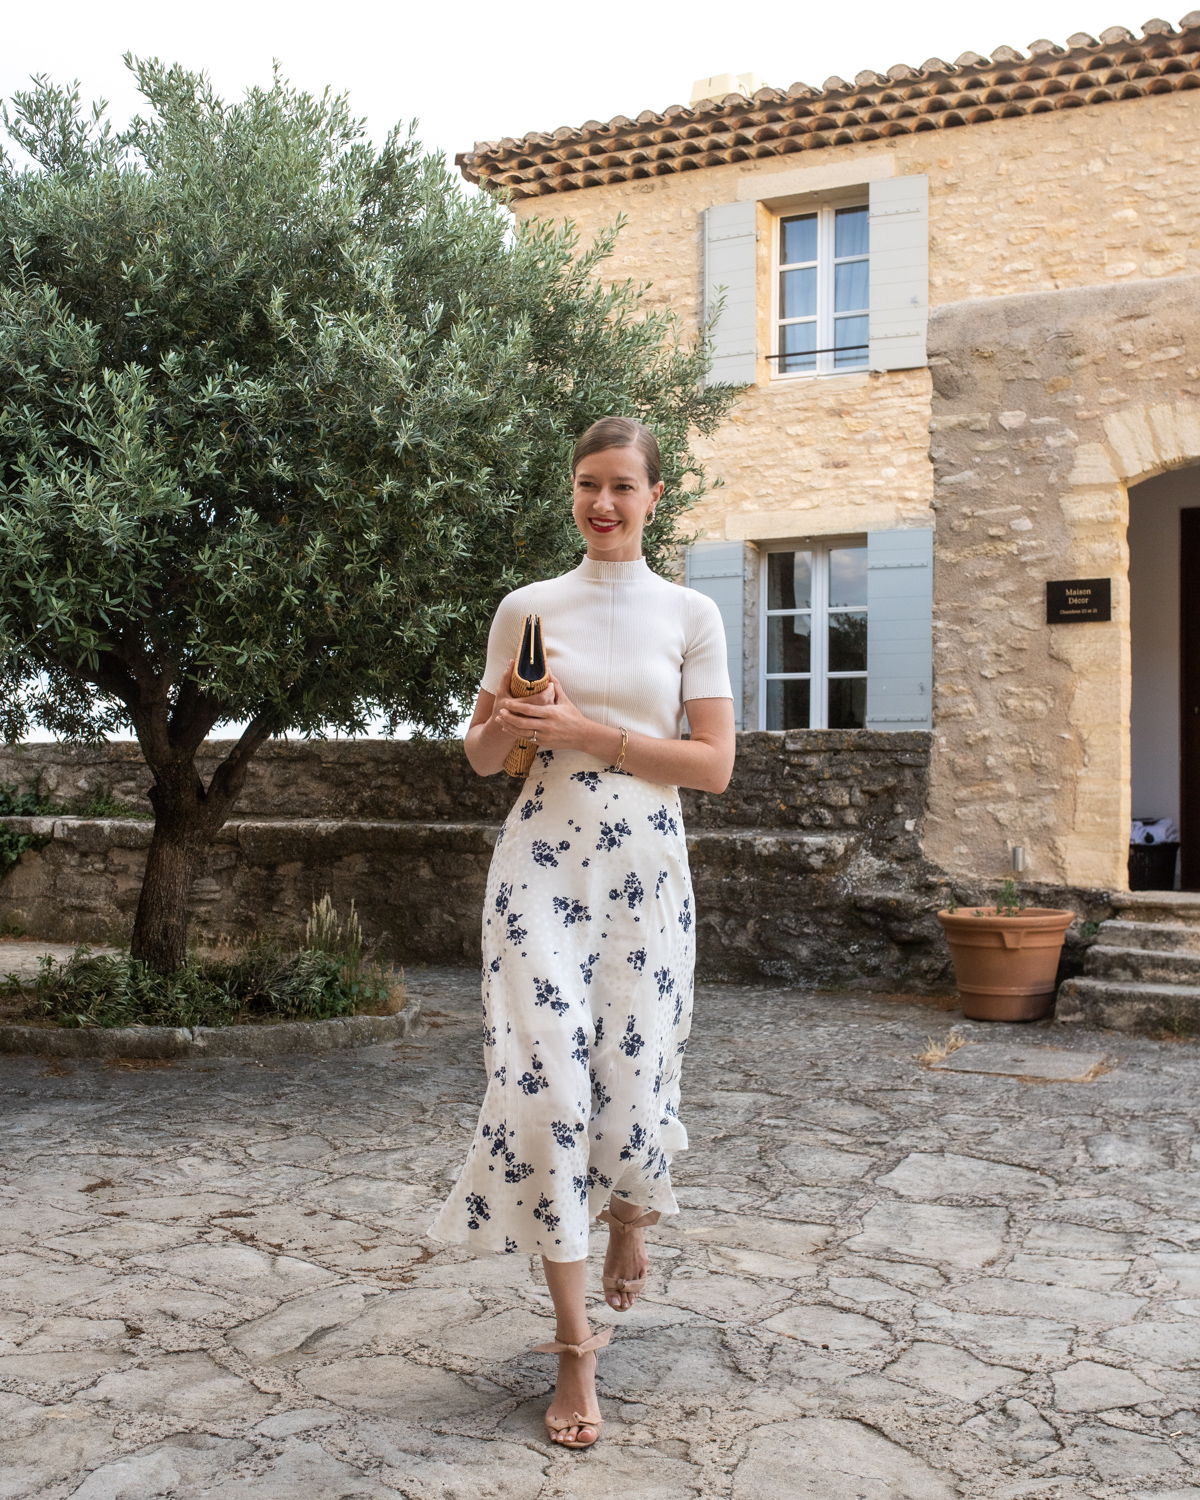 Stacie Flinner x Crillon Le Brave Best Hotels in Provence-6.jpg